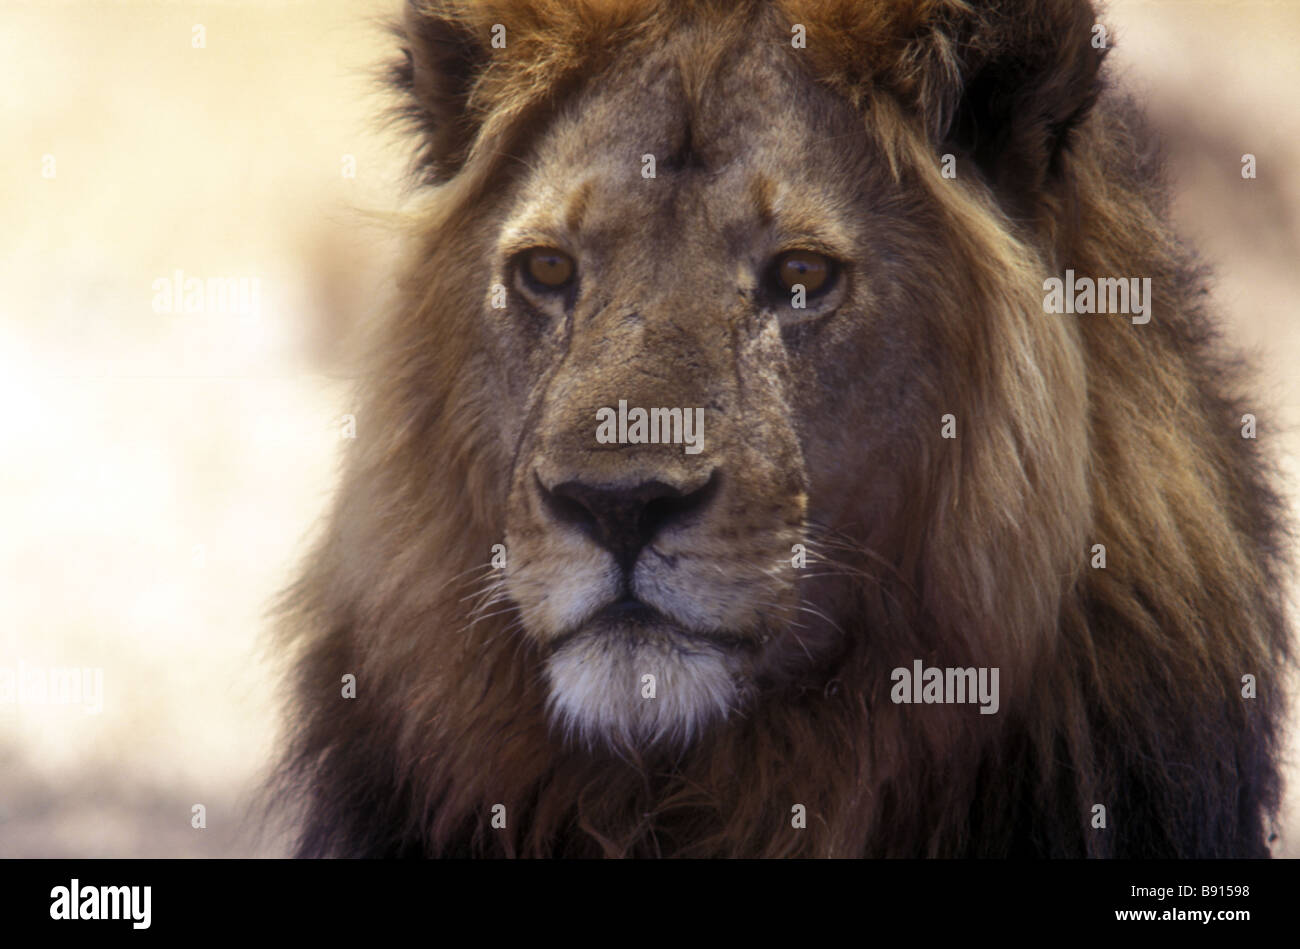 Porträt von männlichen Löwen mit feinen Mähne Blick in die Ferne Serengeti Nationalpark Tansania Ostafrika hautnah Stockfoto